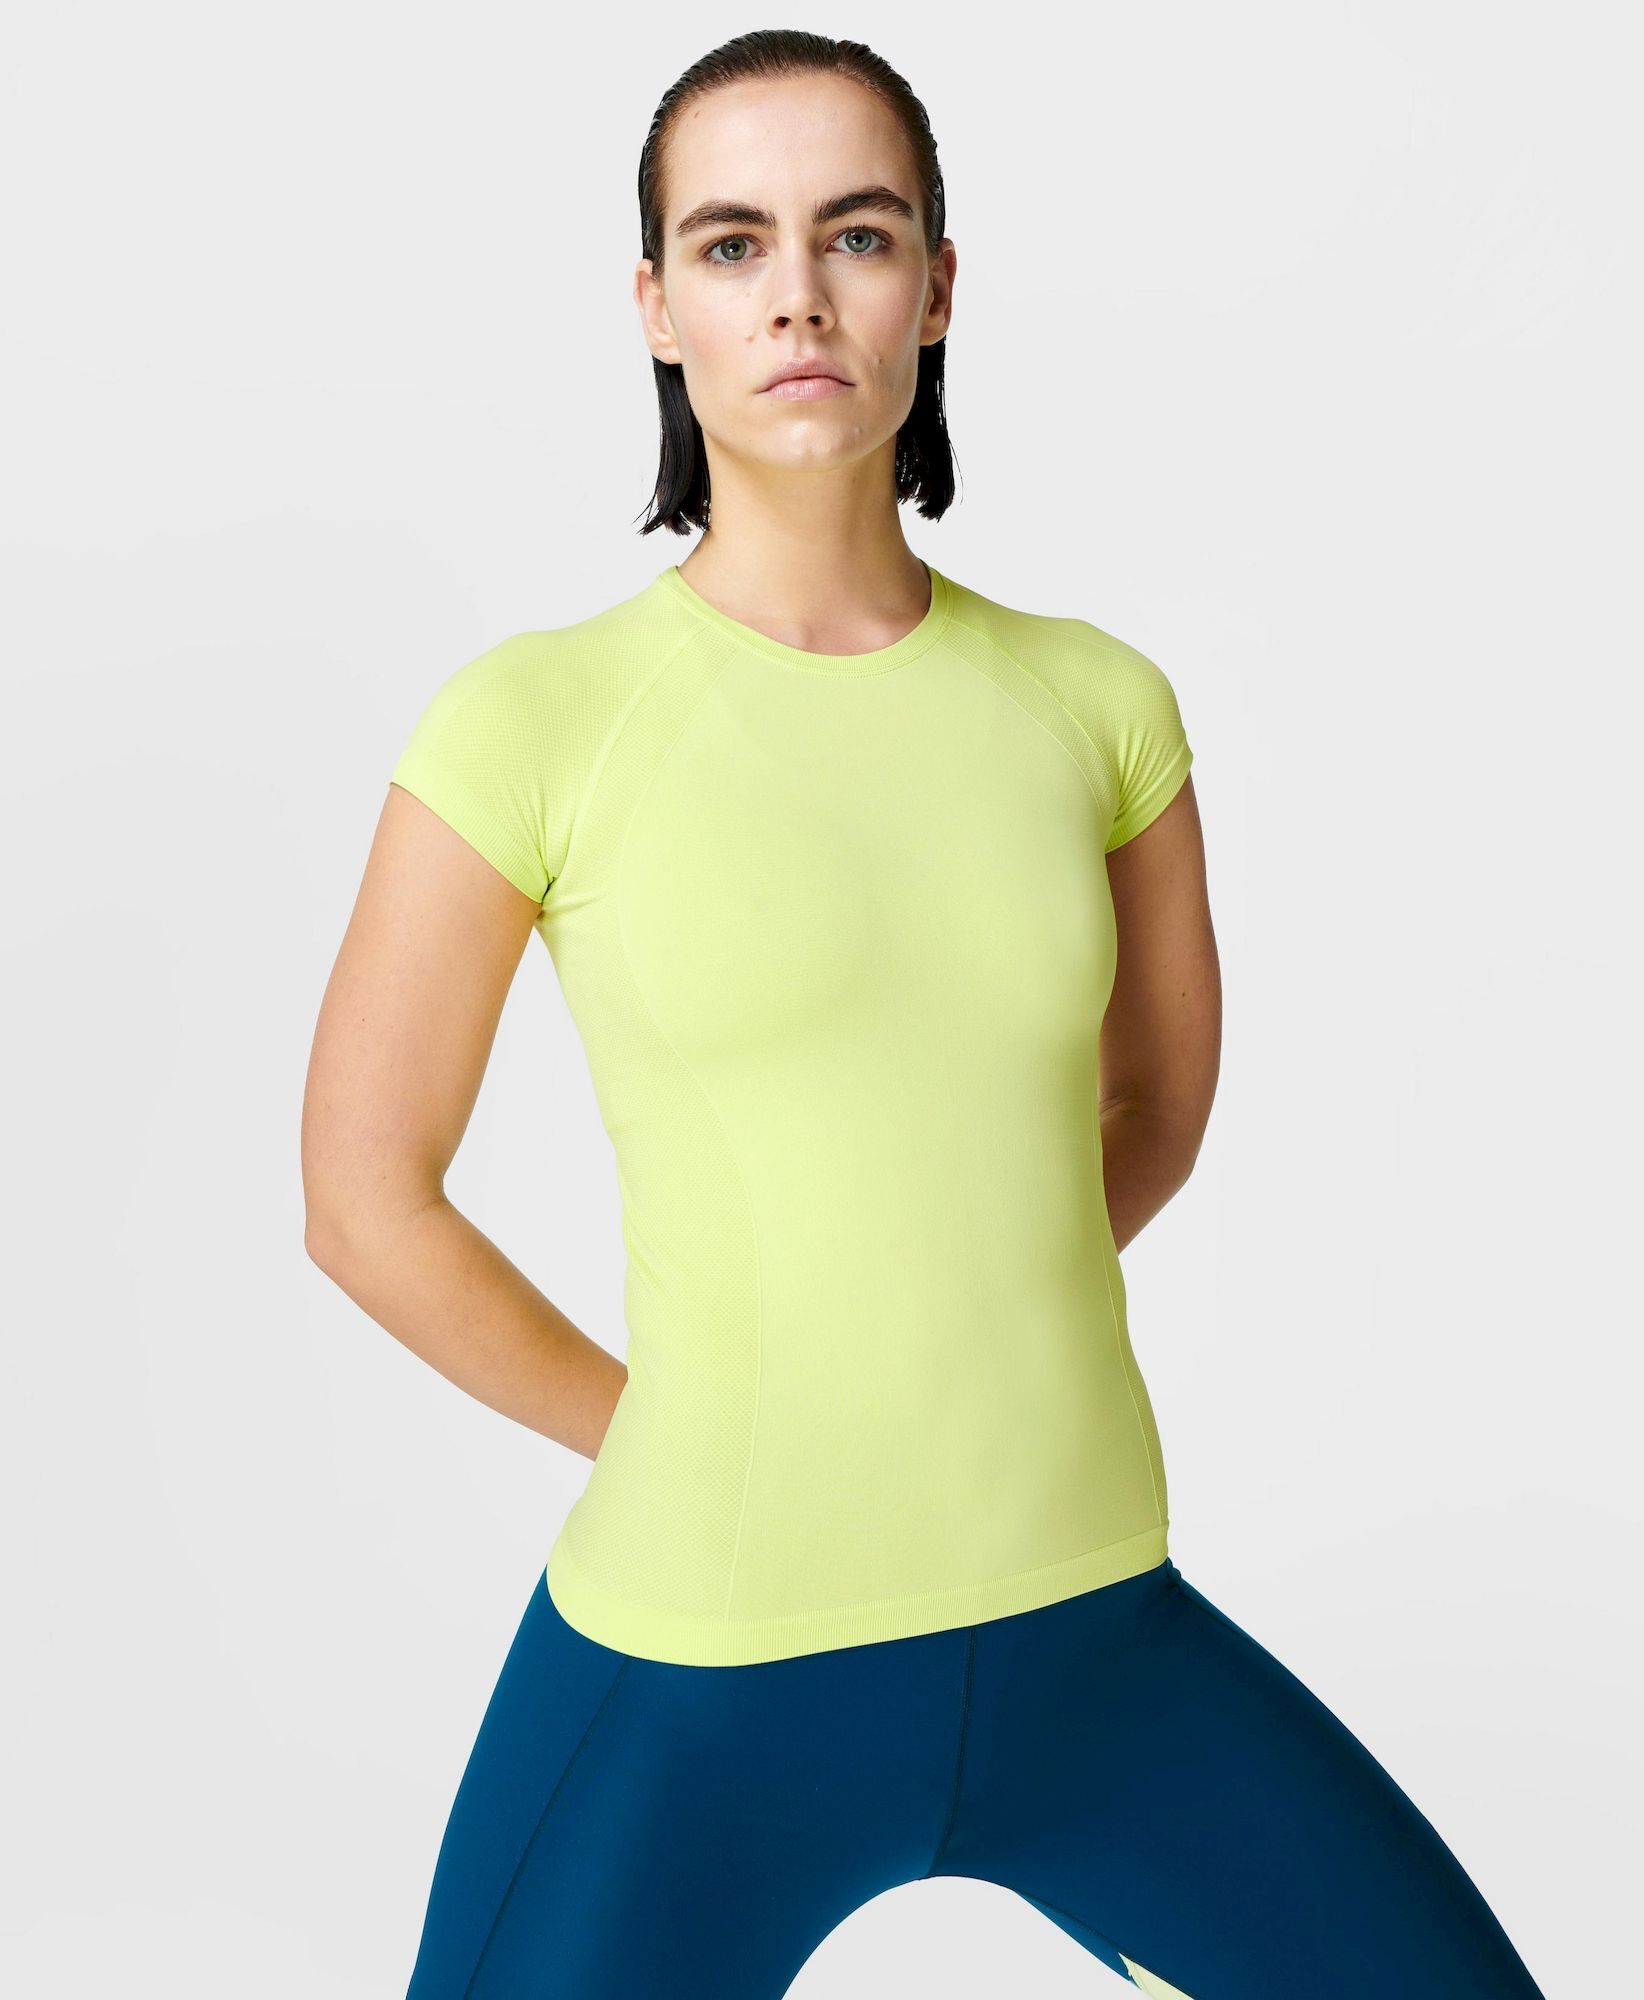 Sweaty Betty Athlete Seamless Workout T-shirt - T-shirt - Women's